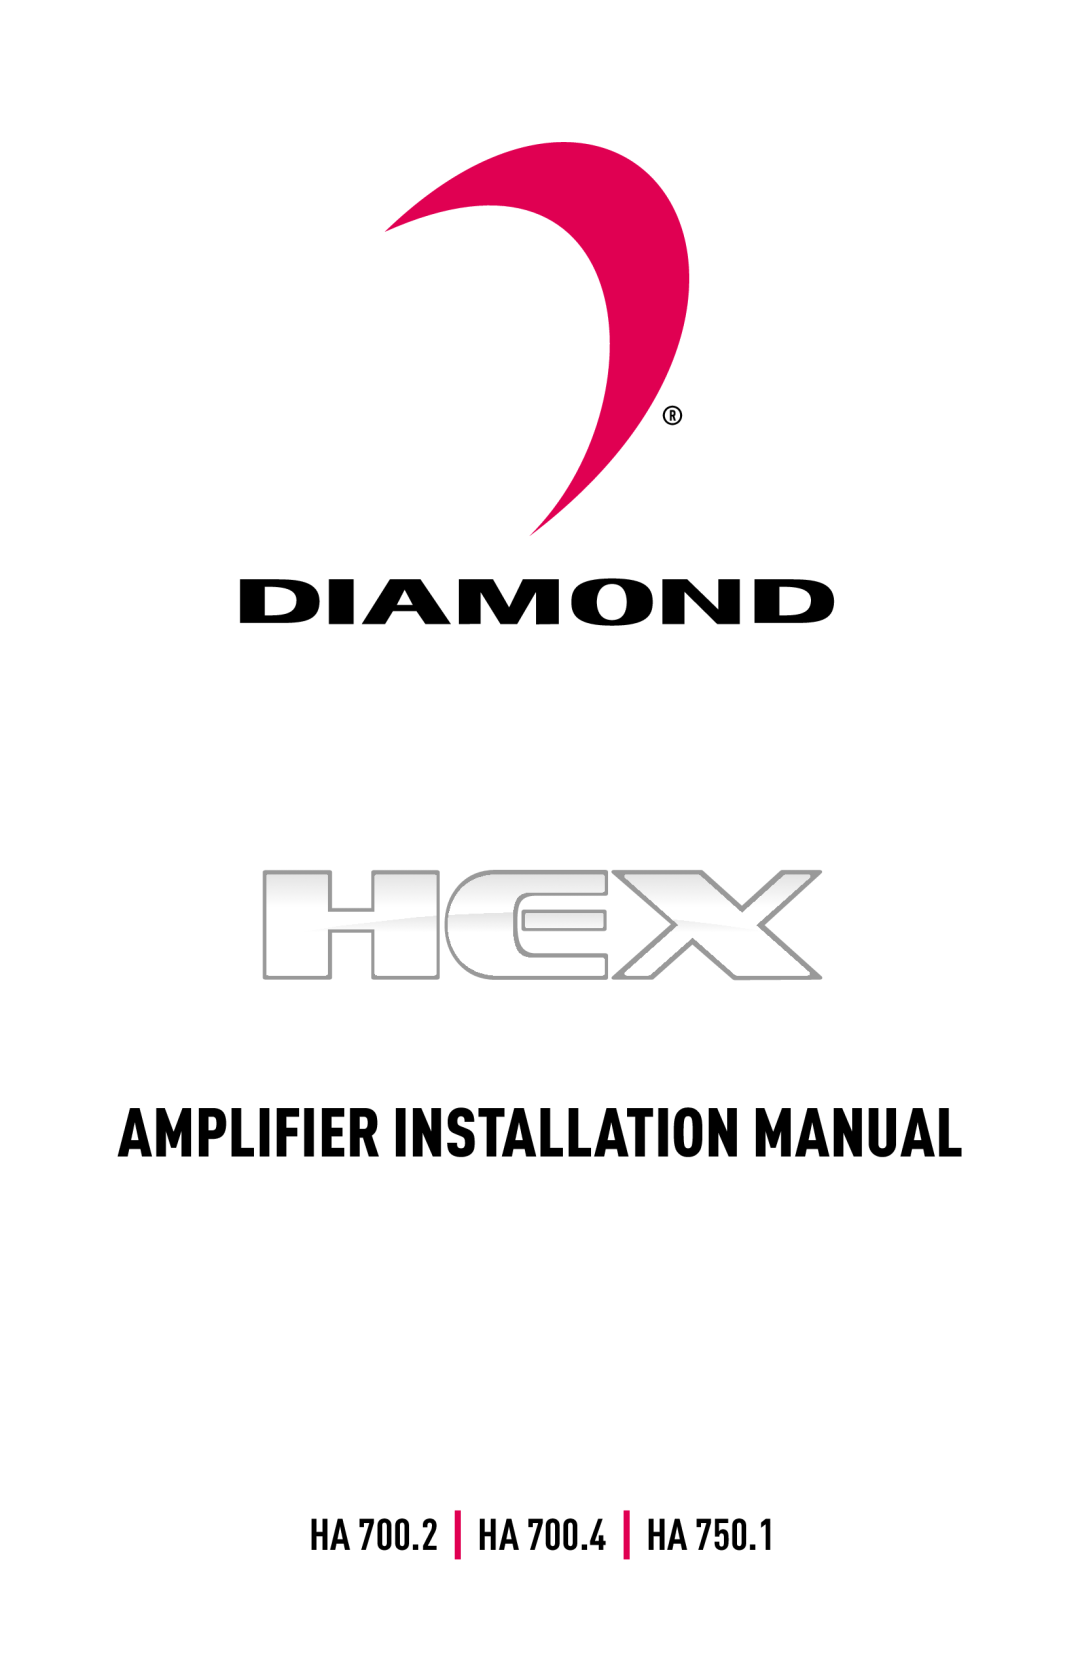 Diamond Audio Technology HA 750.1 installation manual Amplifier Installation Manual, HA 700.2 HA 700.4 HA 